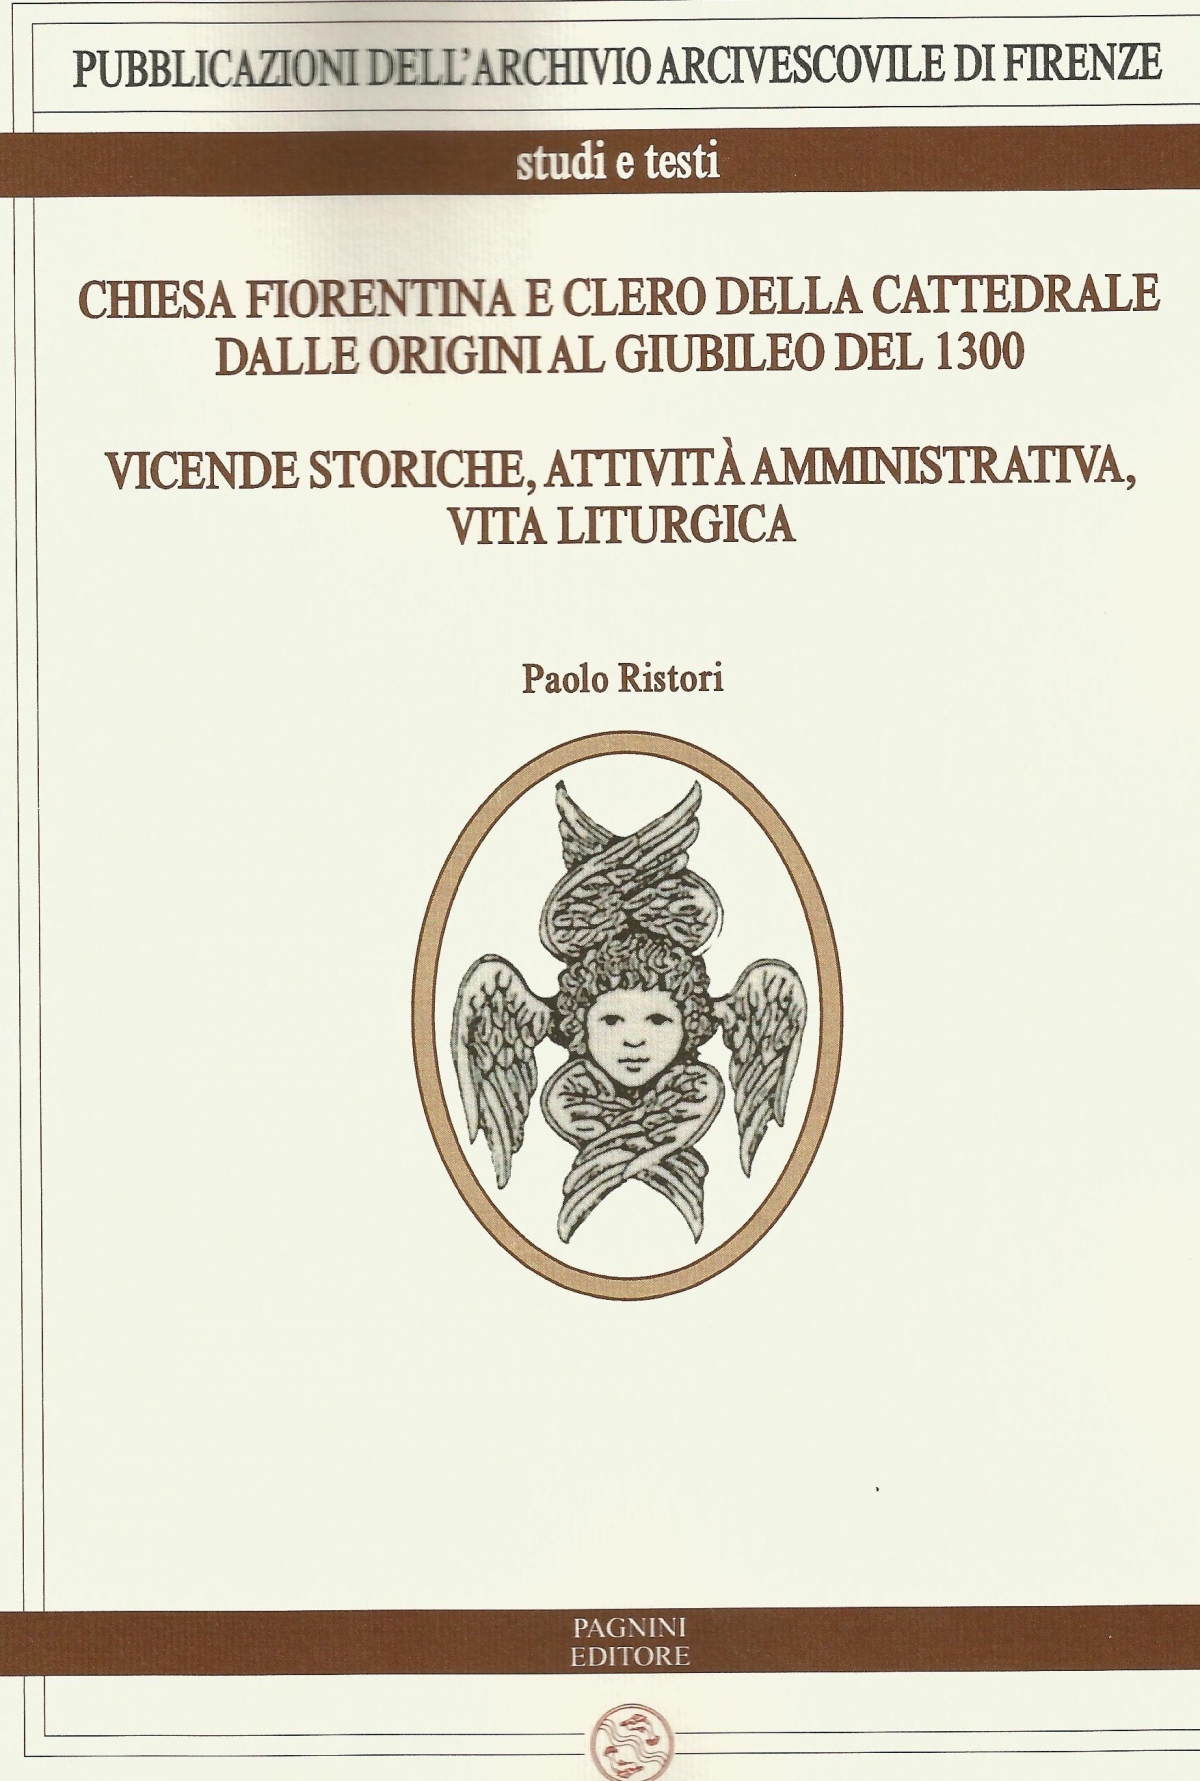 Chiesa fiorentina e clero della Cattedrale dalle origini al Giubileo del 1300